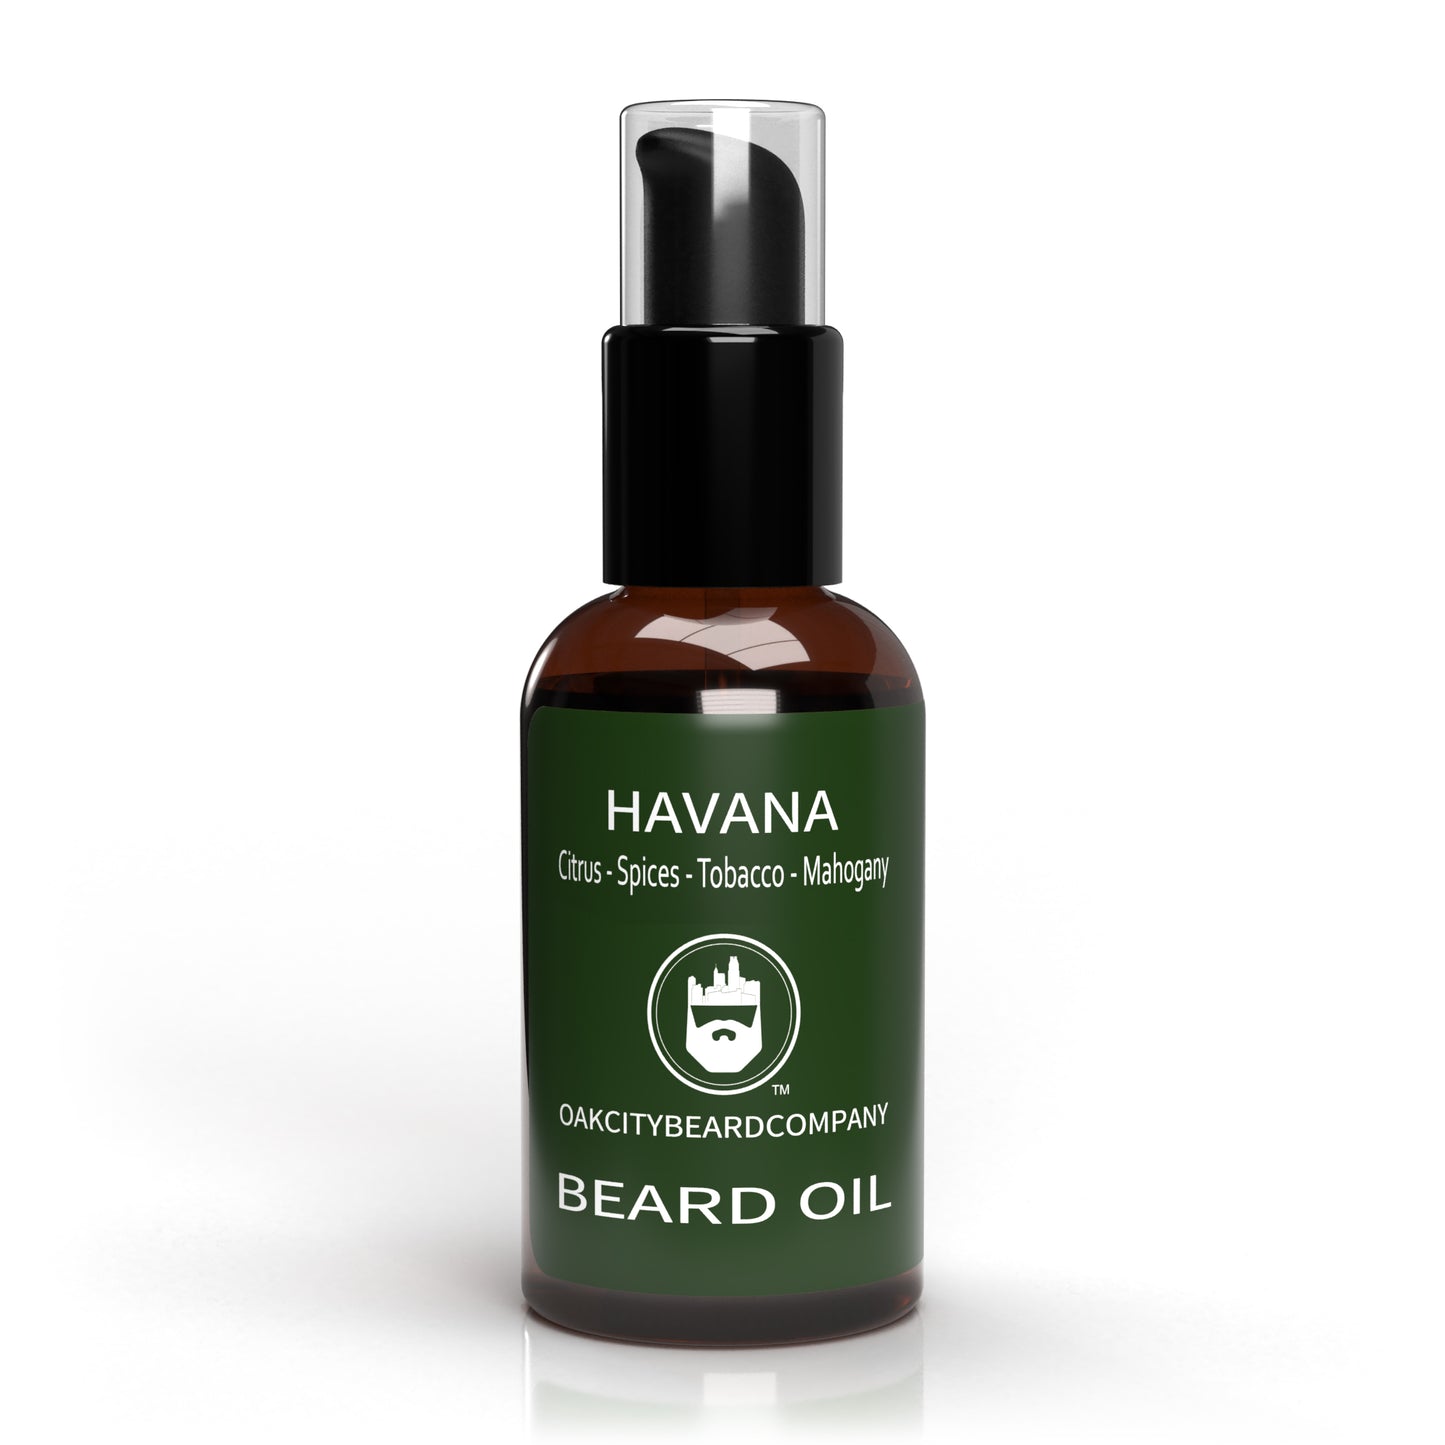 Havana (Beard Oil) by Oak City Beard Company